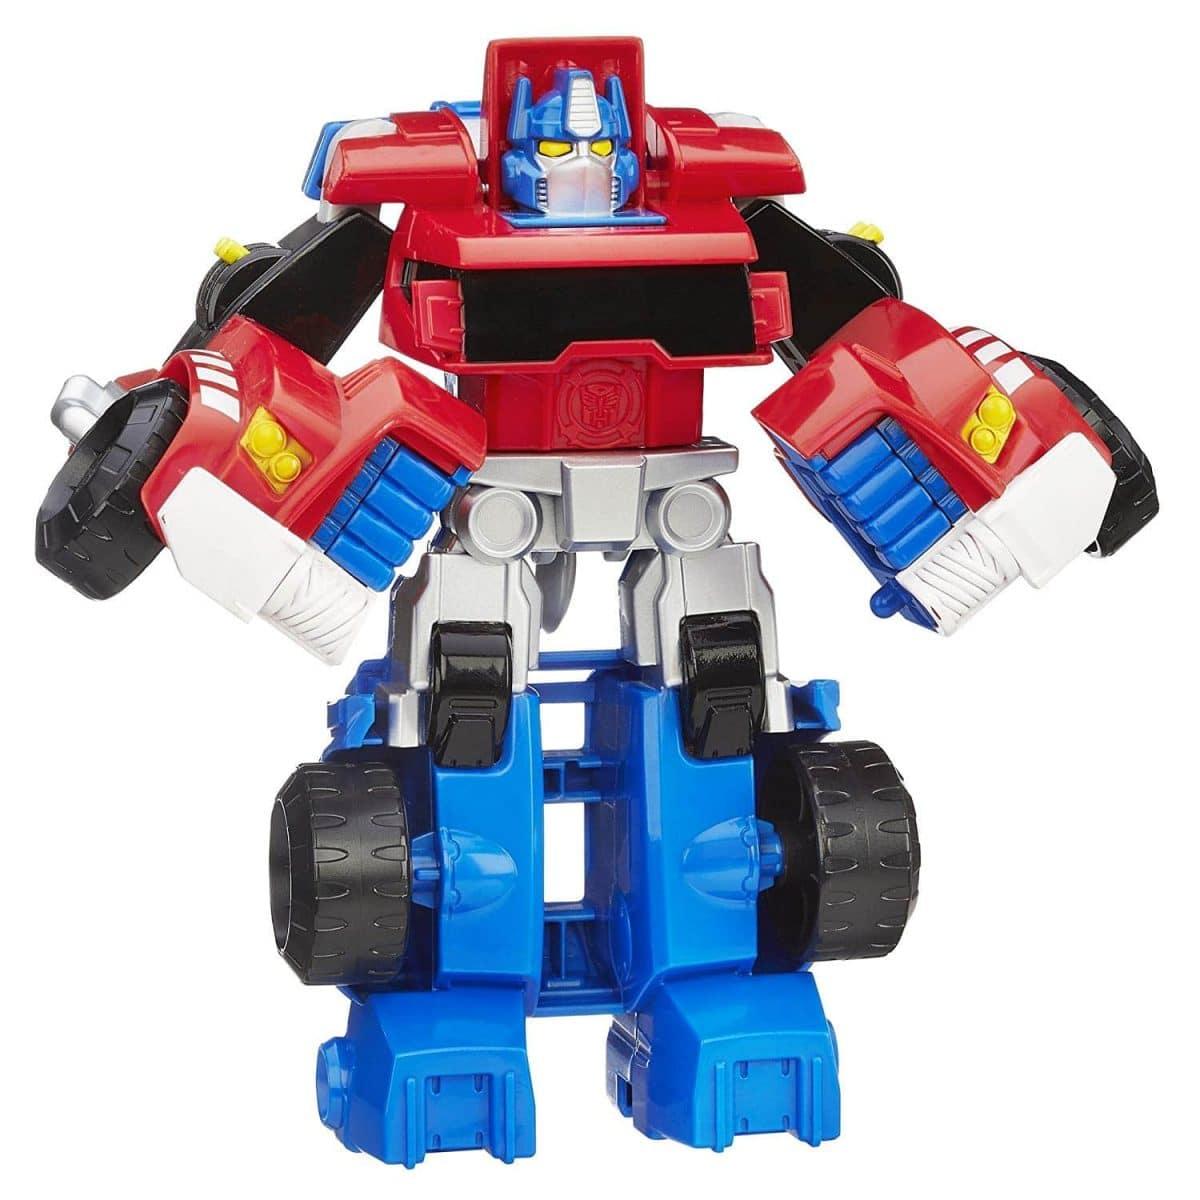 Playschool Heros Transformers Rescue Bots